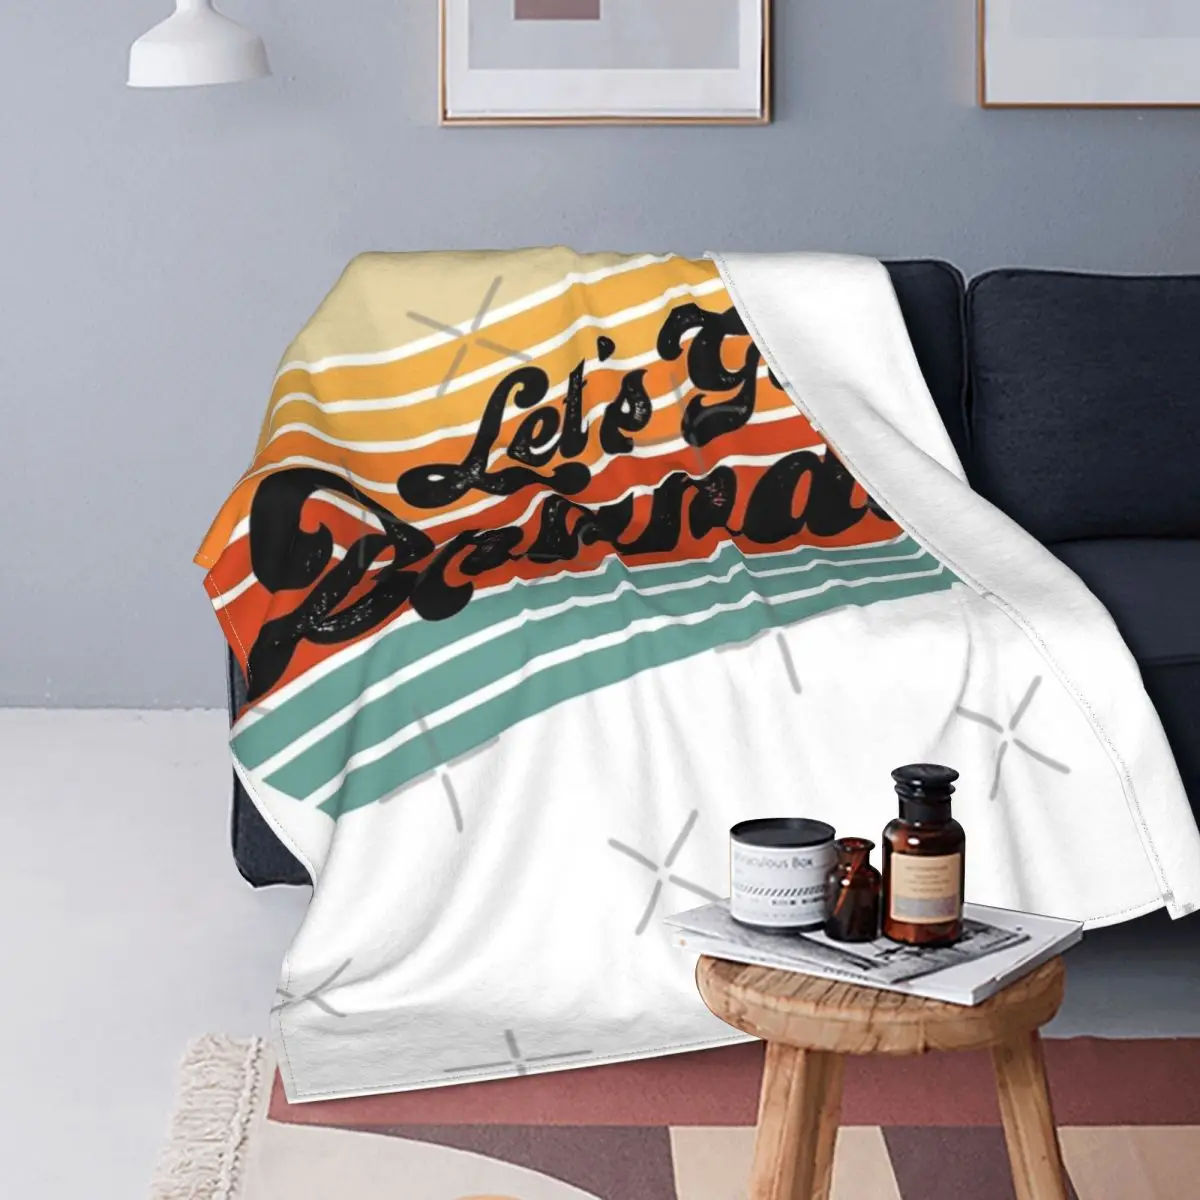 

Ретро Одеяло С закатом Let's Go, Брэндон, покрывало для кровати, клетчатый диван, покрывала для кровати, двойное одеяло, покрывало для пикника